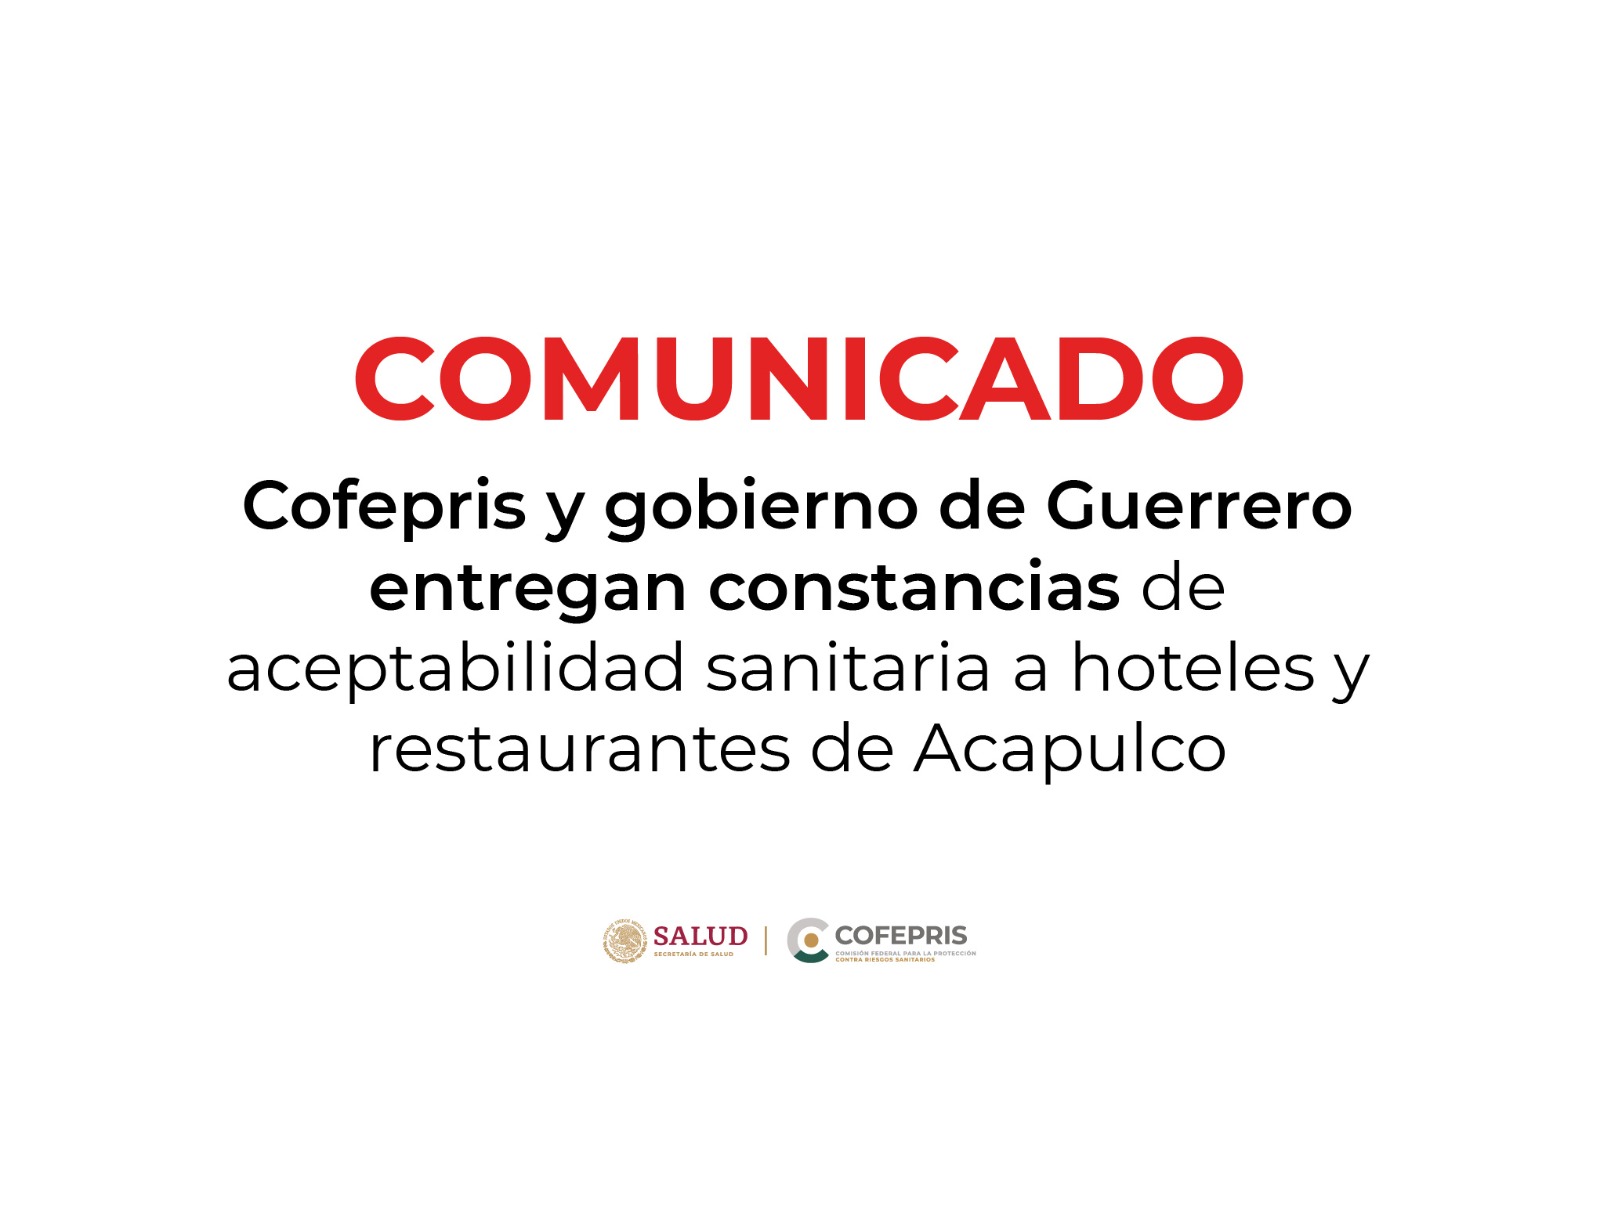 Cofepris y gobierno de Guerrero entregan constancias sanitarias a hoteles y restaurantes de Acapulco 